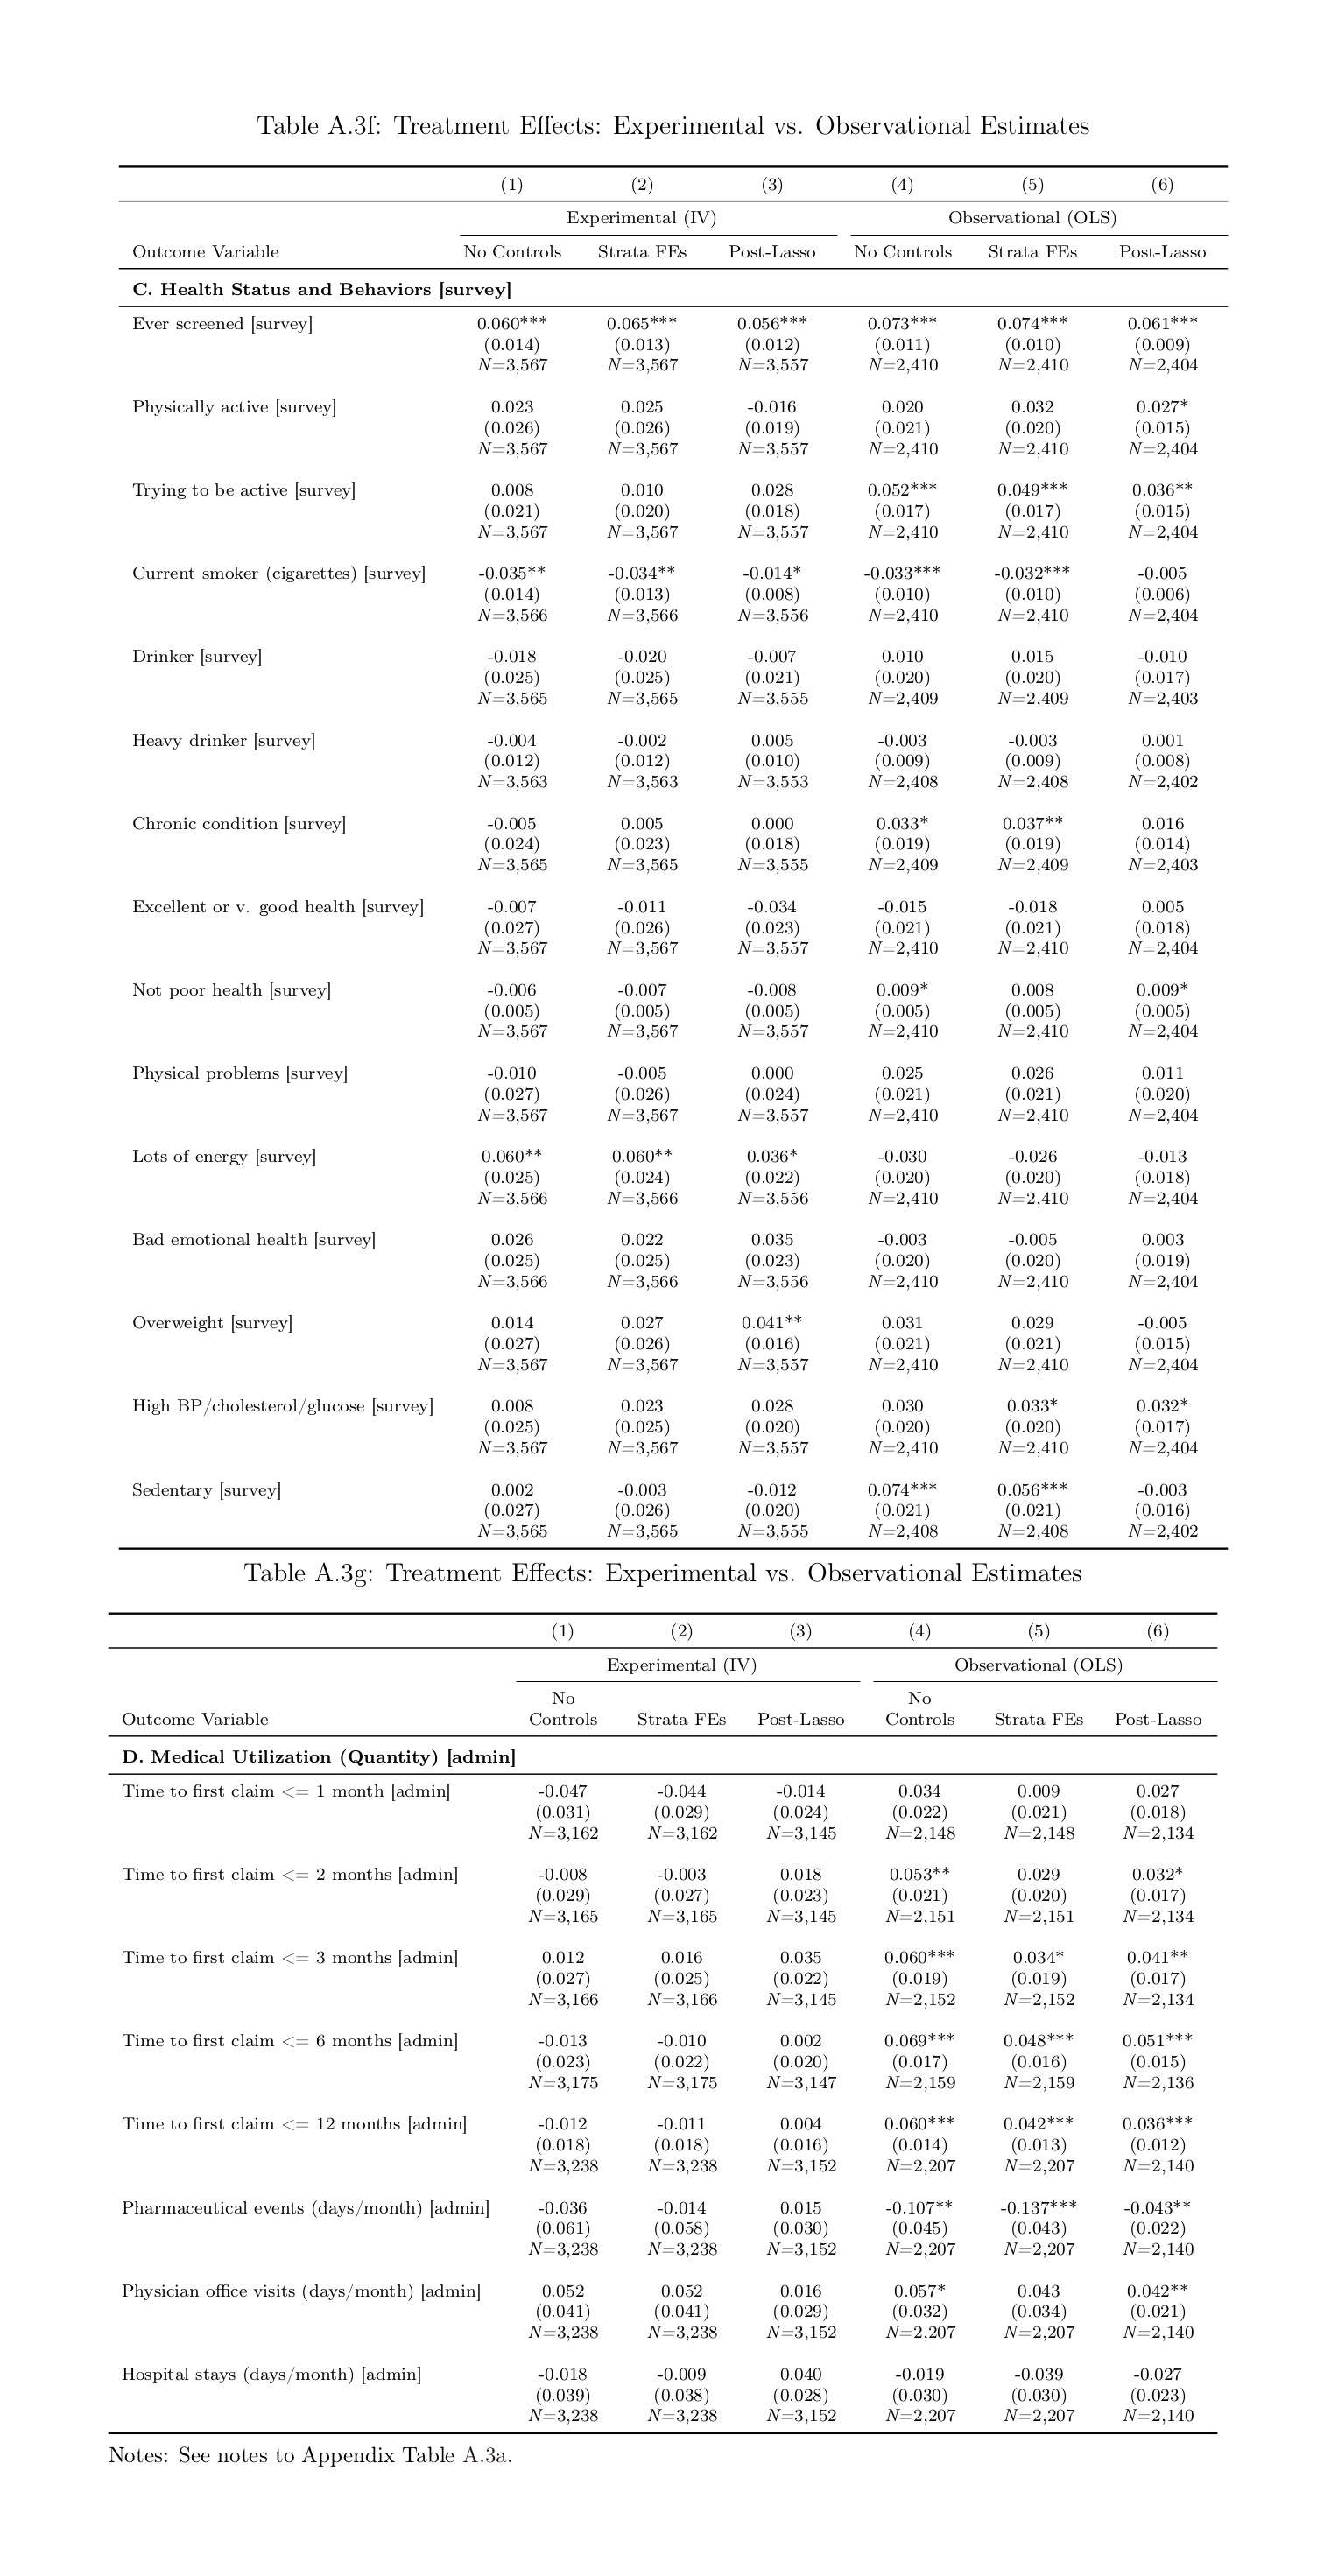 Jones et al 2018 appendix: Table A3, f-g, all randomized vs correlational estimates